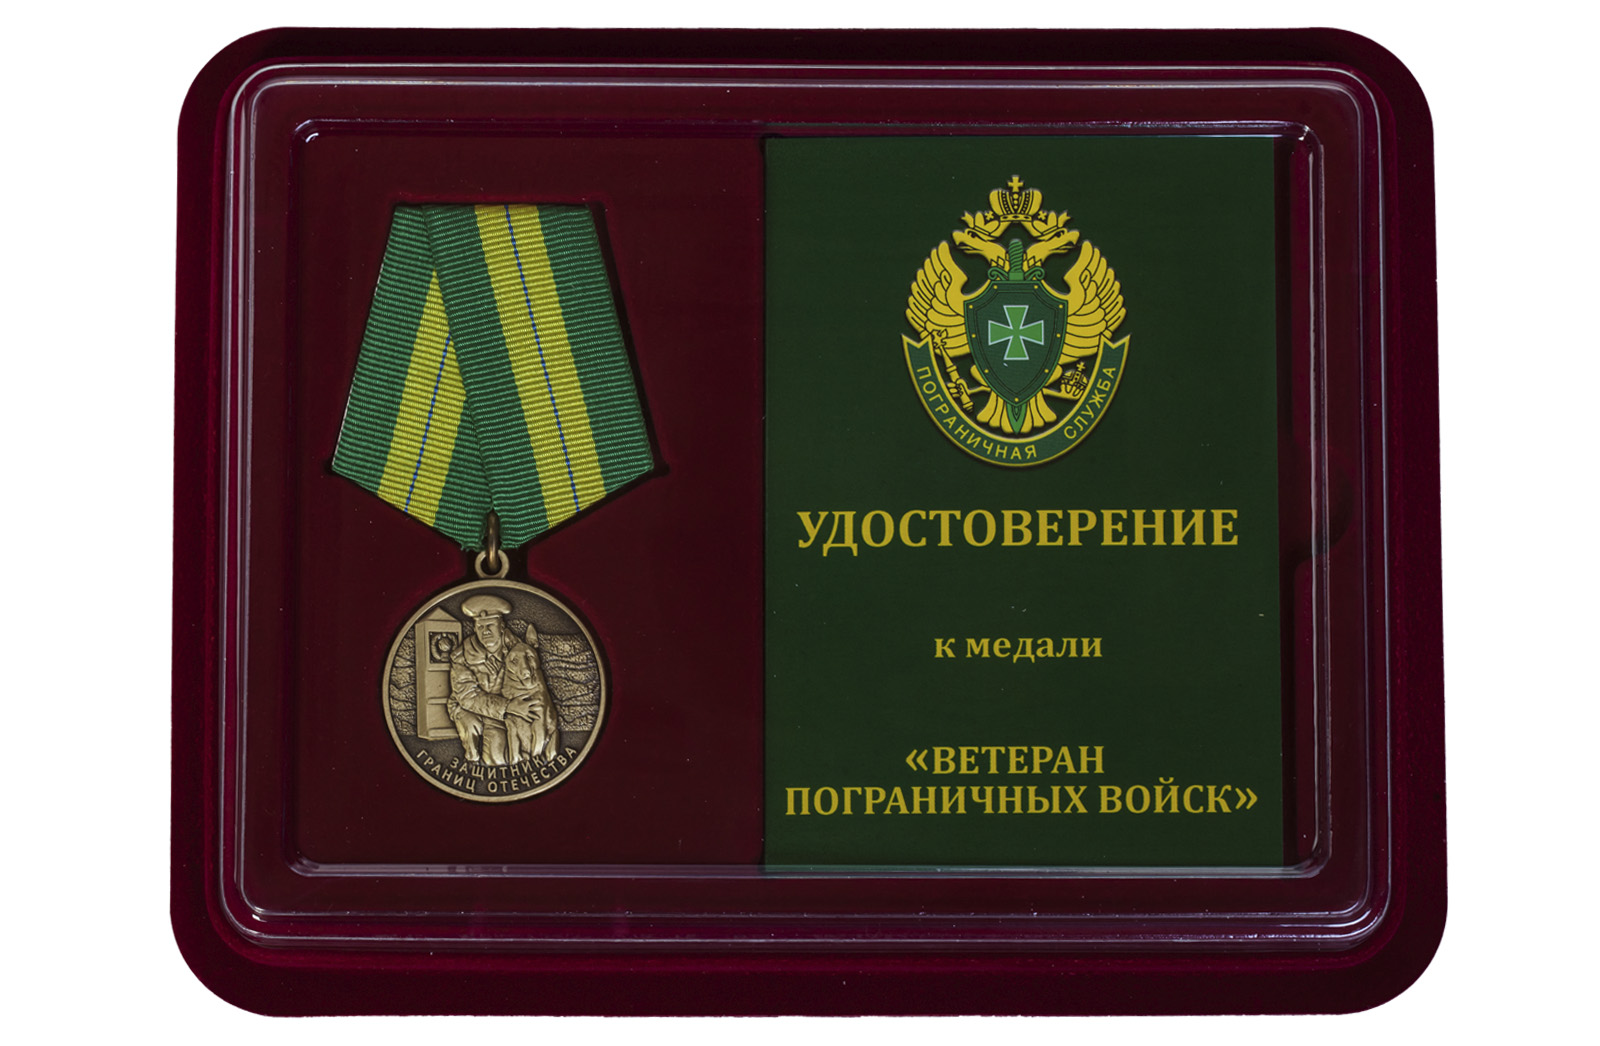 Купить медаль Ветеран пограничных войск по лучшей цене